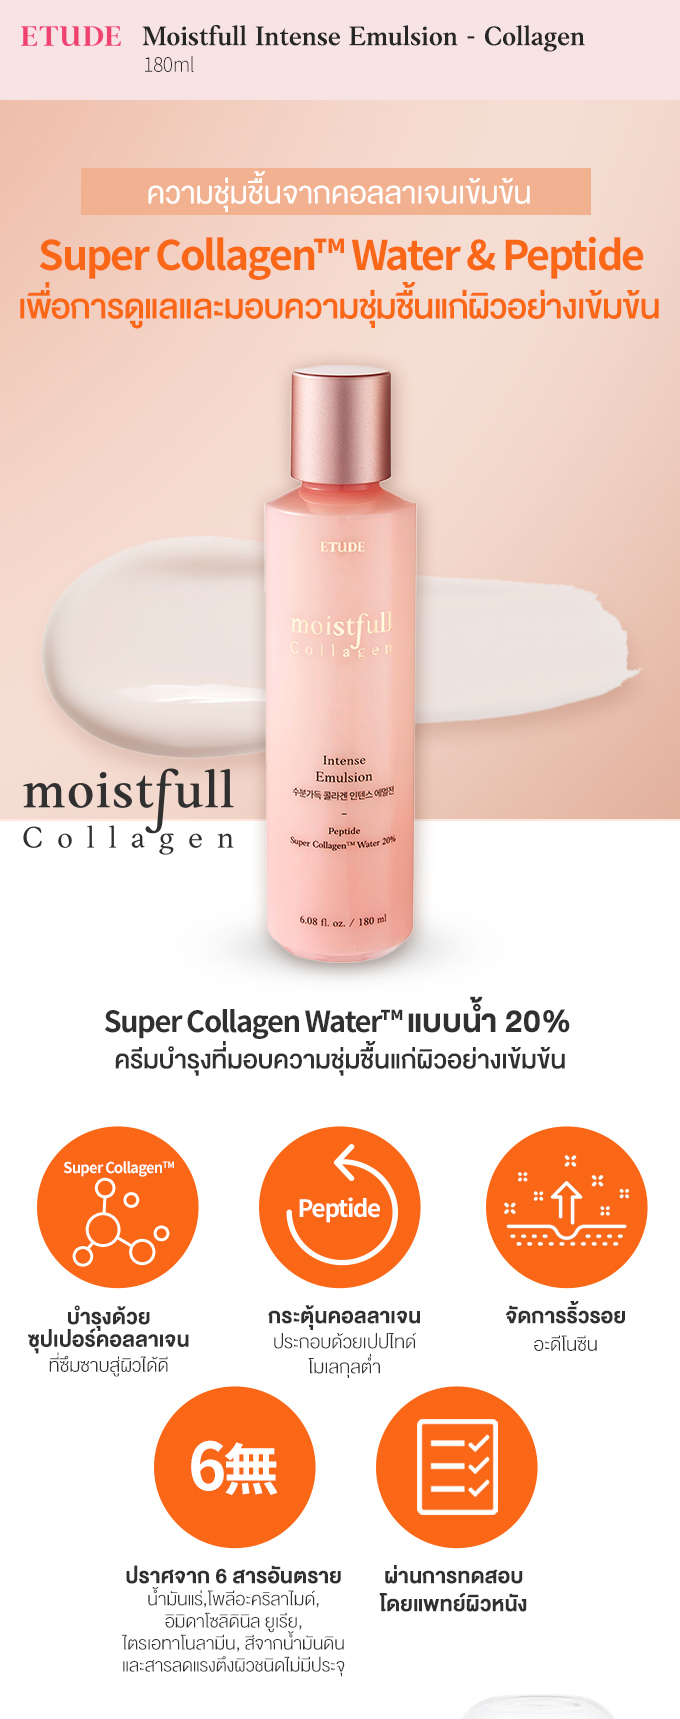 moistfull_collagen_intense_emulsion_sub_TH_1